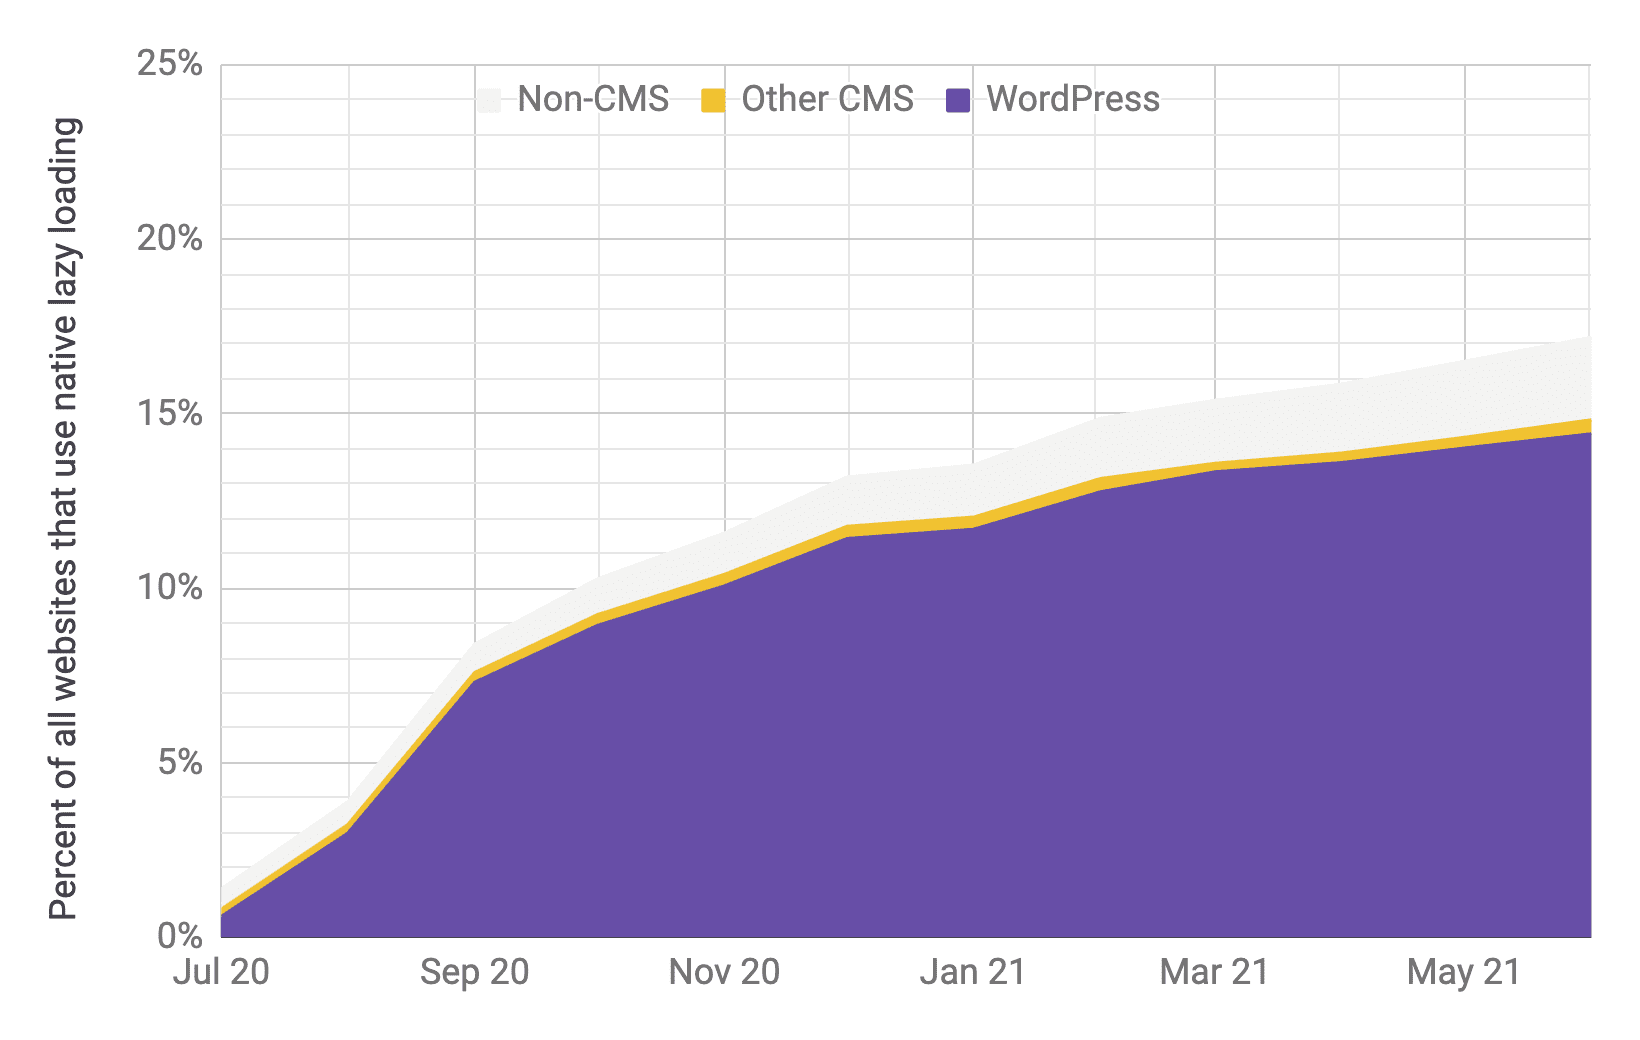 نمودار سری زمانی پذیرش بارگذاری تنبل با وردپرس در مقایسه با سایر CMS ها و غیر CMS ها، با نسبت های مشابه با نمودار قبلی، بازیکن غالب است. نشان داده شده است که پذیرش کل از ژوئیه 2020 تا ژوئن 2021 به سرعت از 1٪ به 17٪ افزایش یافته است.